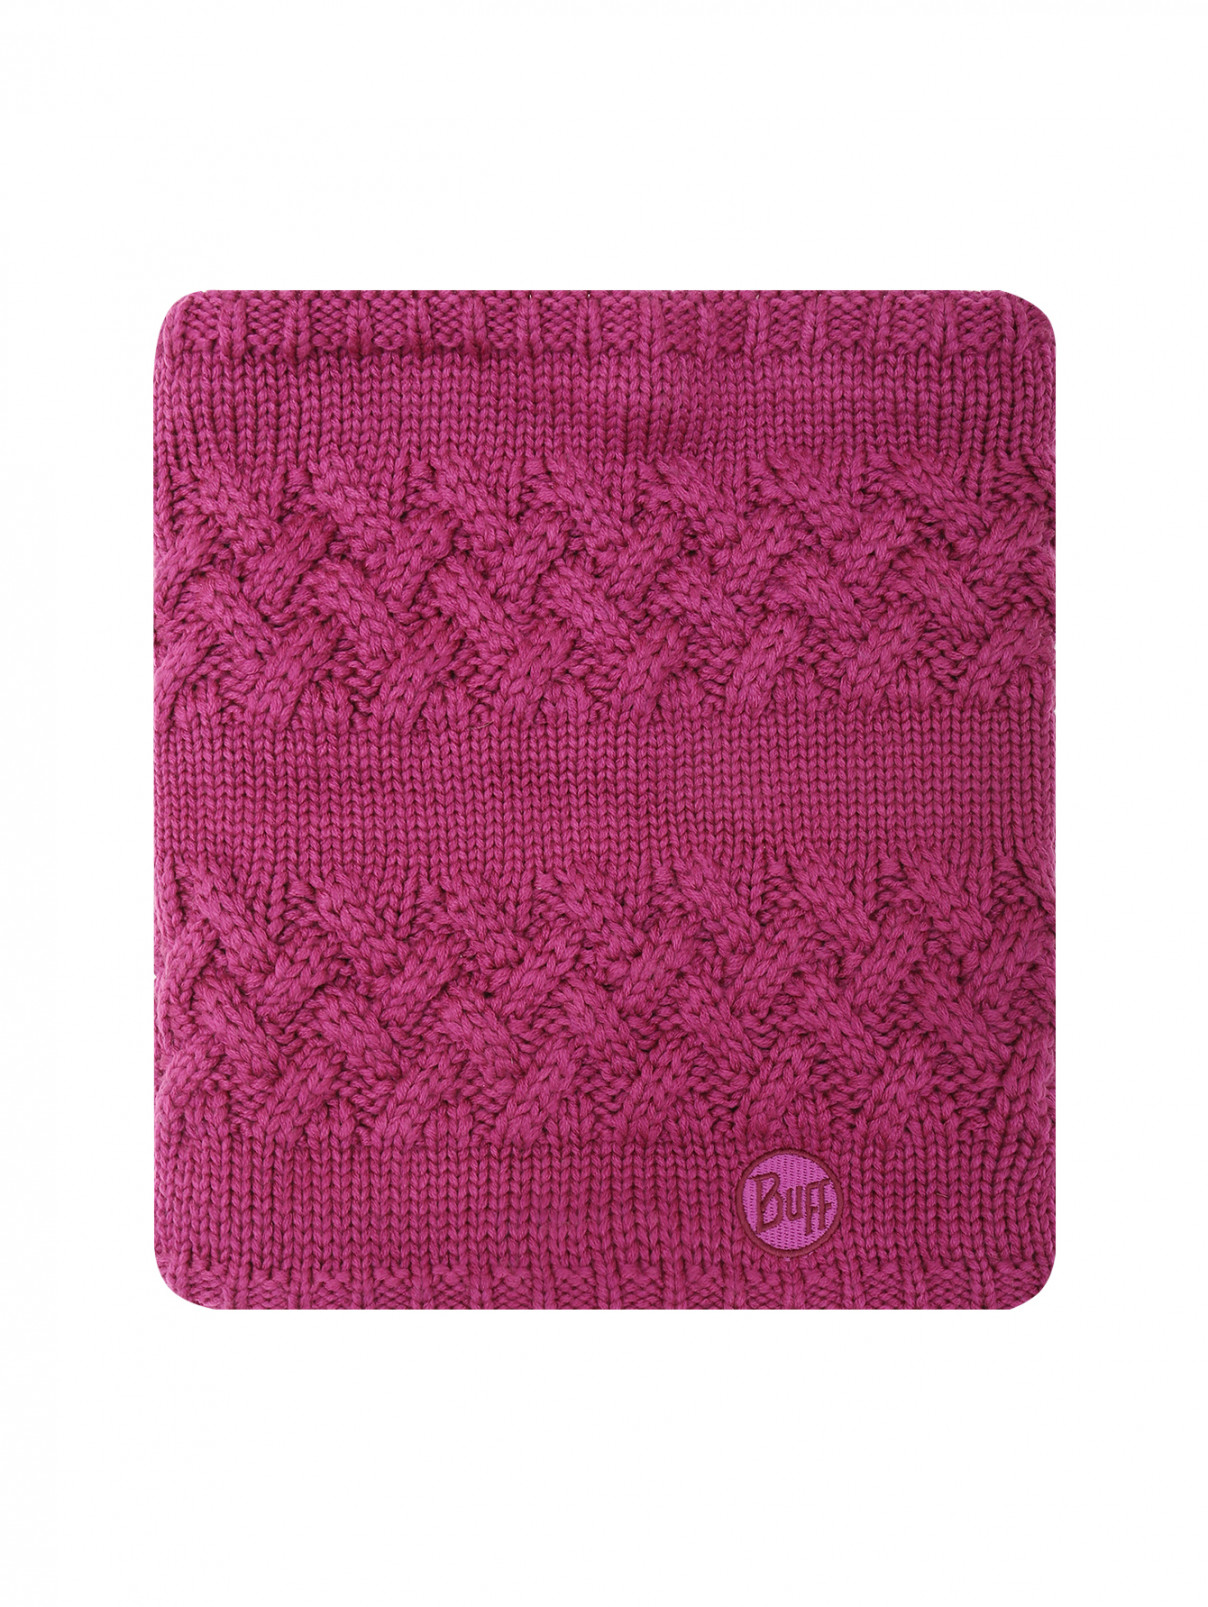 Шарф-снуд фактурной вязки Buff  –  Общий вид  – Цвет:  Фиолетовый